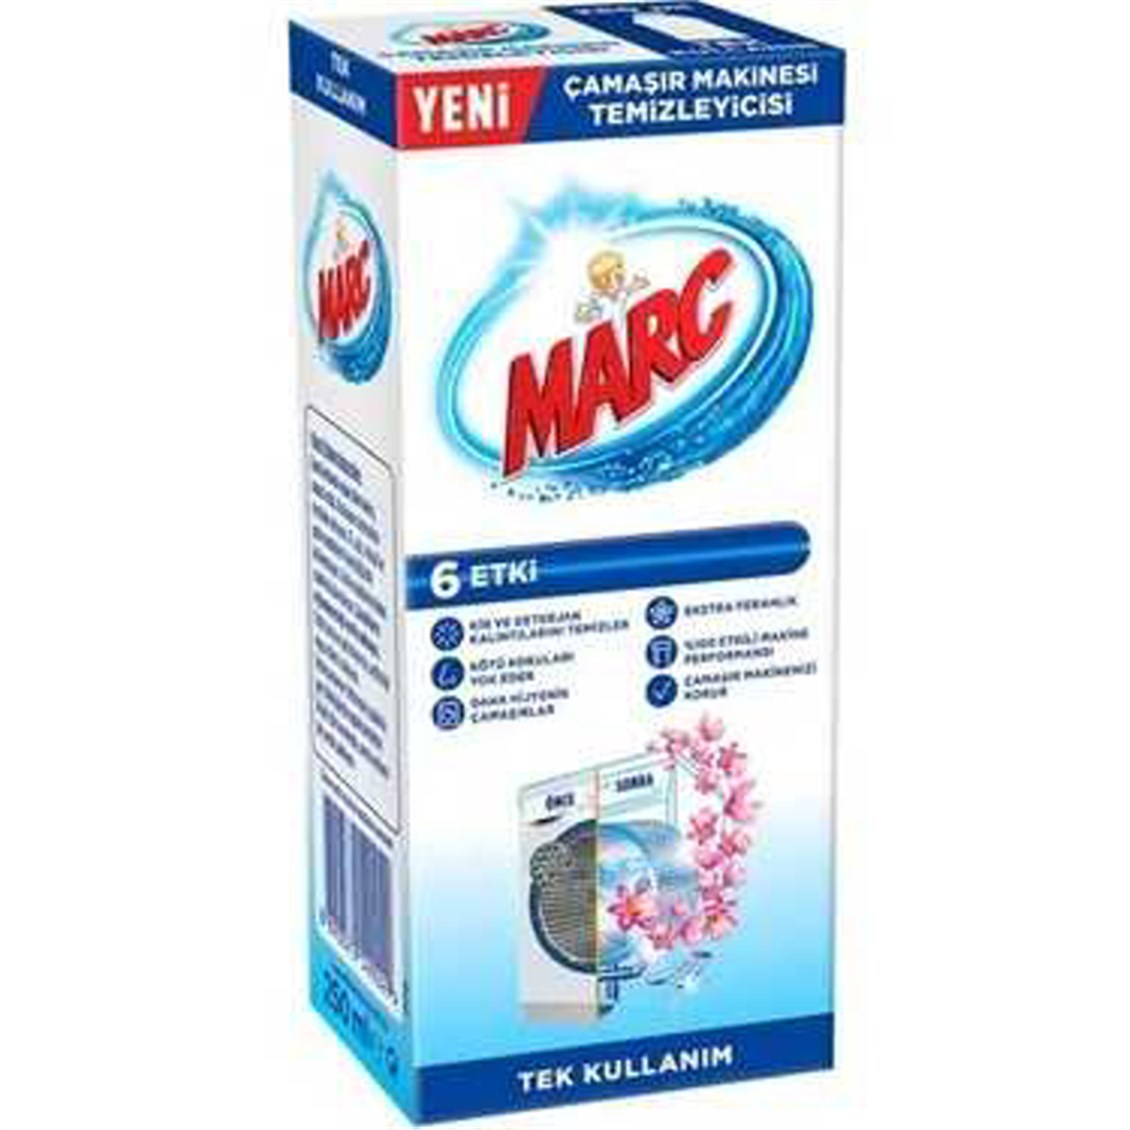 Marc Çamaşır Makinesi Temizleyicisi Floral 250 ml - Onur Market